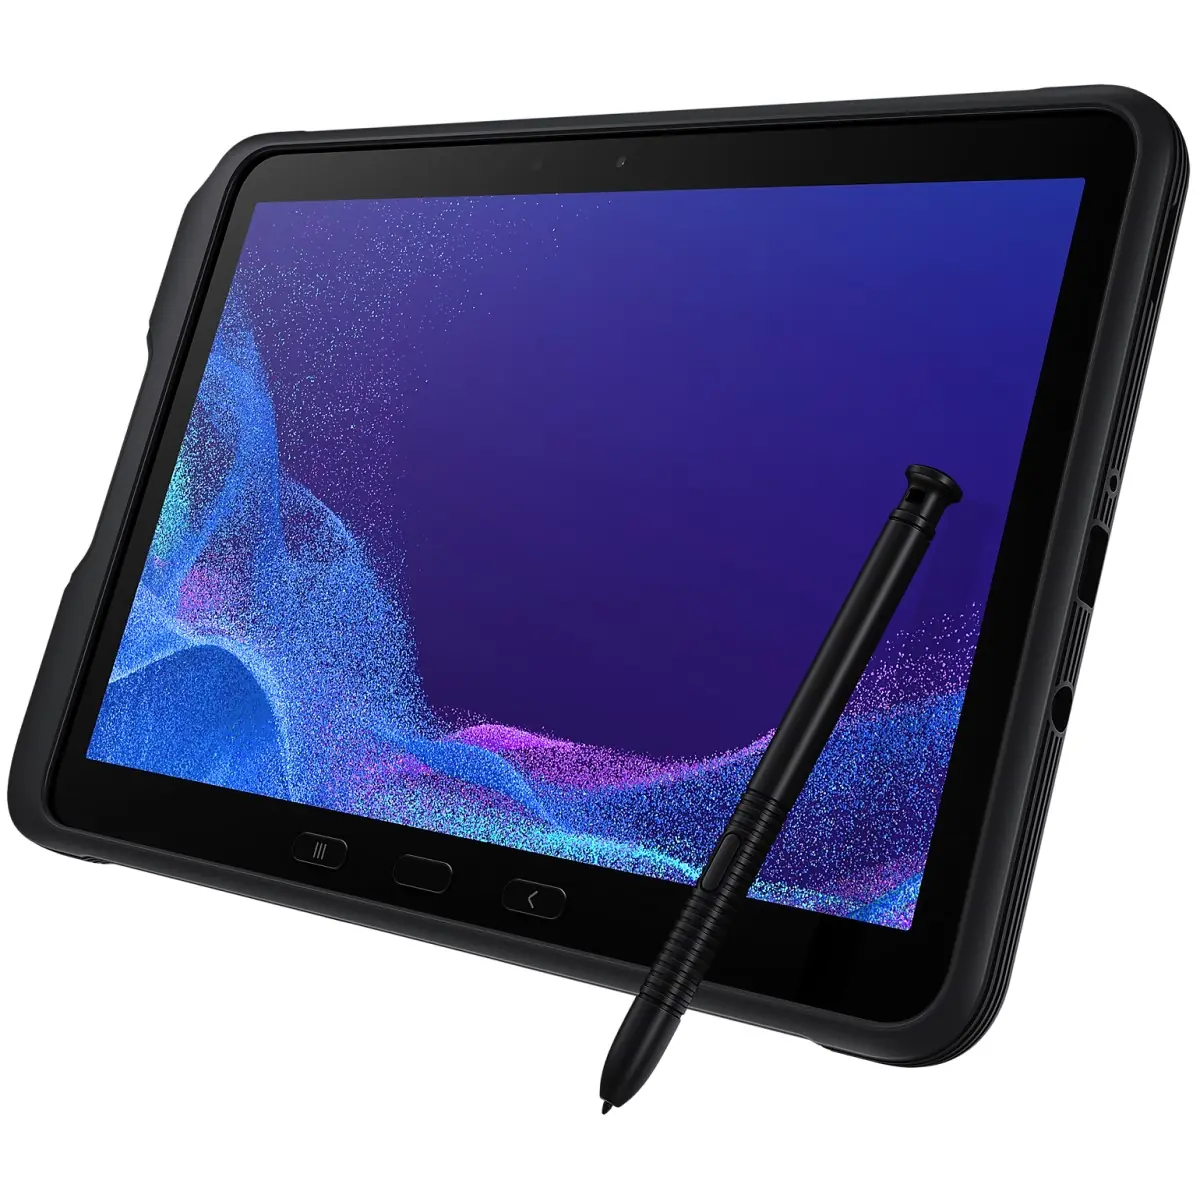 Test Samsung Galaxy Tab 4 10.1, la tablette 10 pouces taillée pour